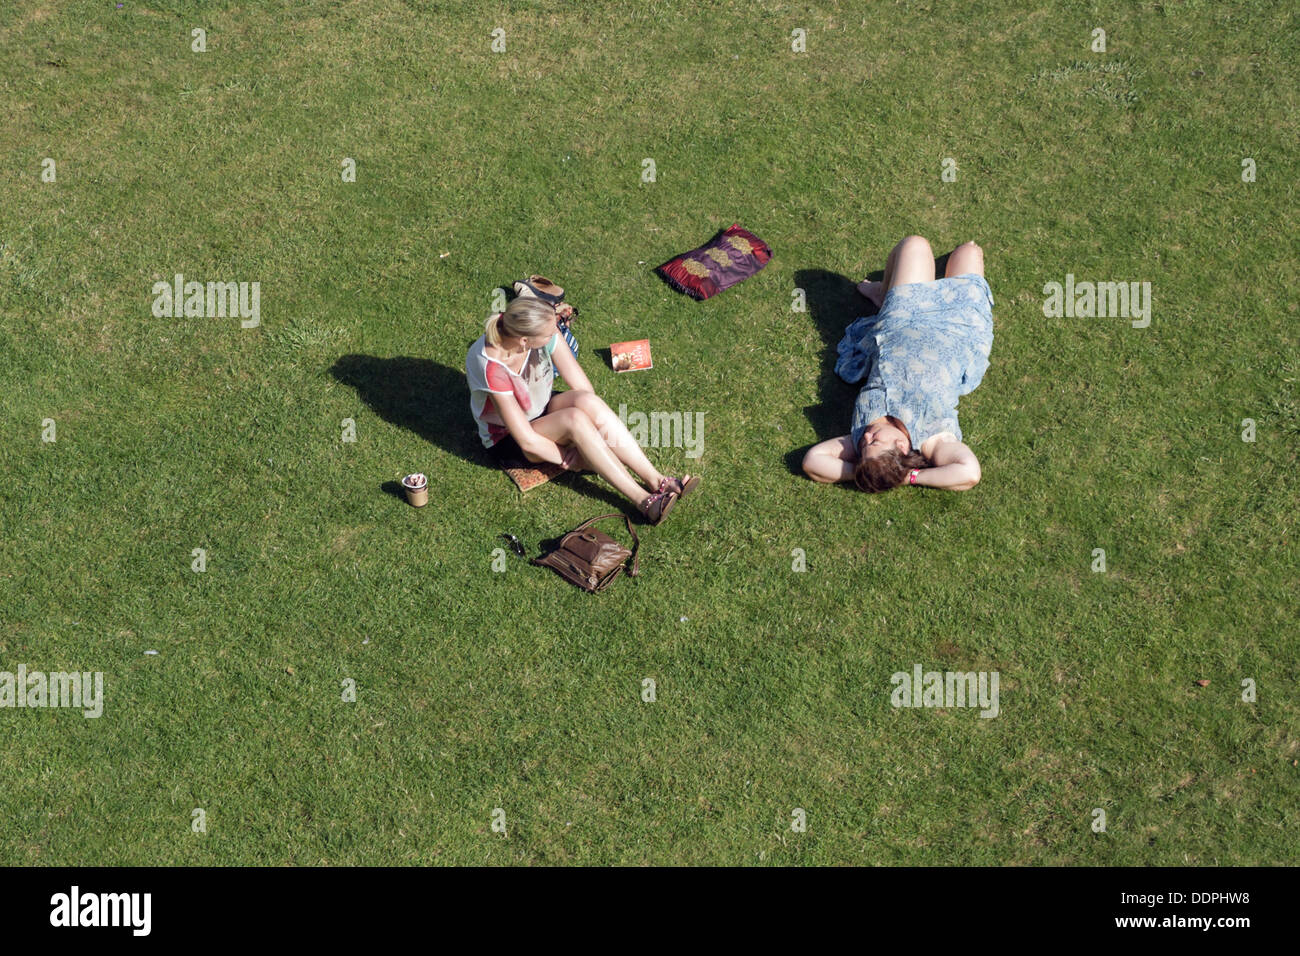 Bath, Regno Unito. 5 settembre 2013. Due donne sono fotografati in Parade Gardens godendo l'ultimo dei climi caldi come il Met Office britannico predice che il recente clima caldo che il Regno Unito ha avuto è presto alla fine. Credito: lynchpics/Alamy Live News Foto Stock